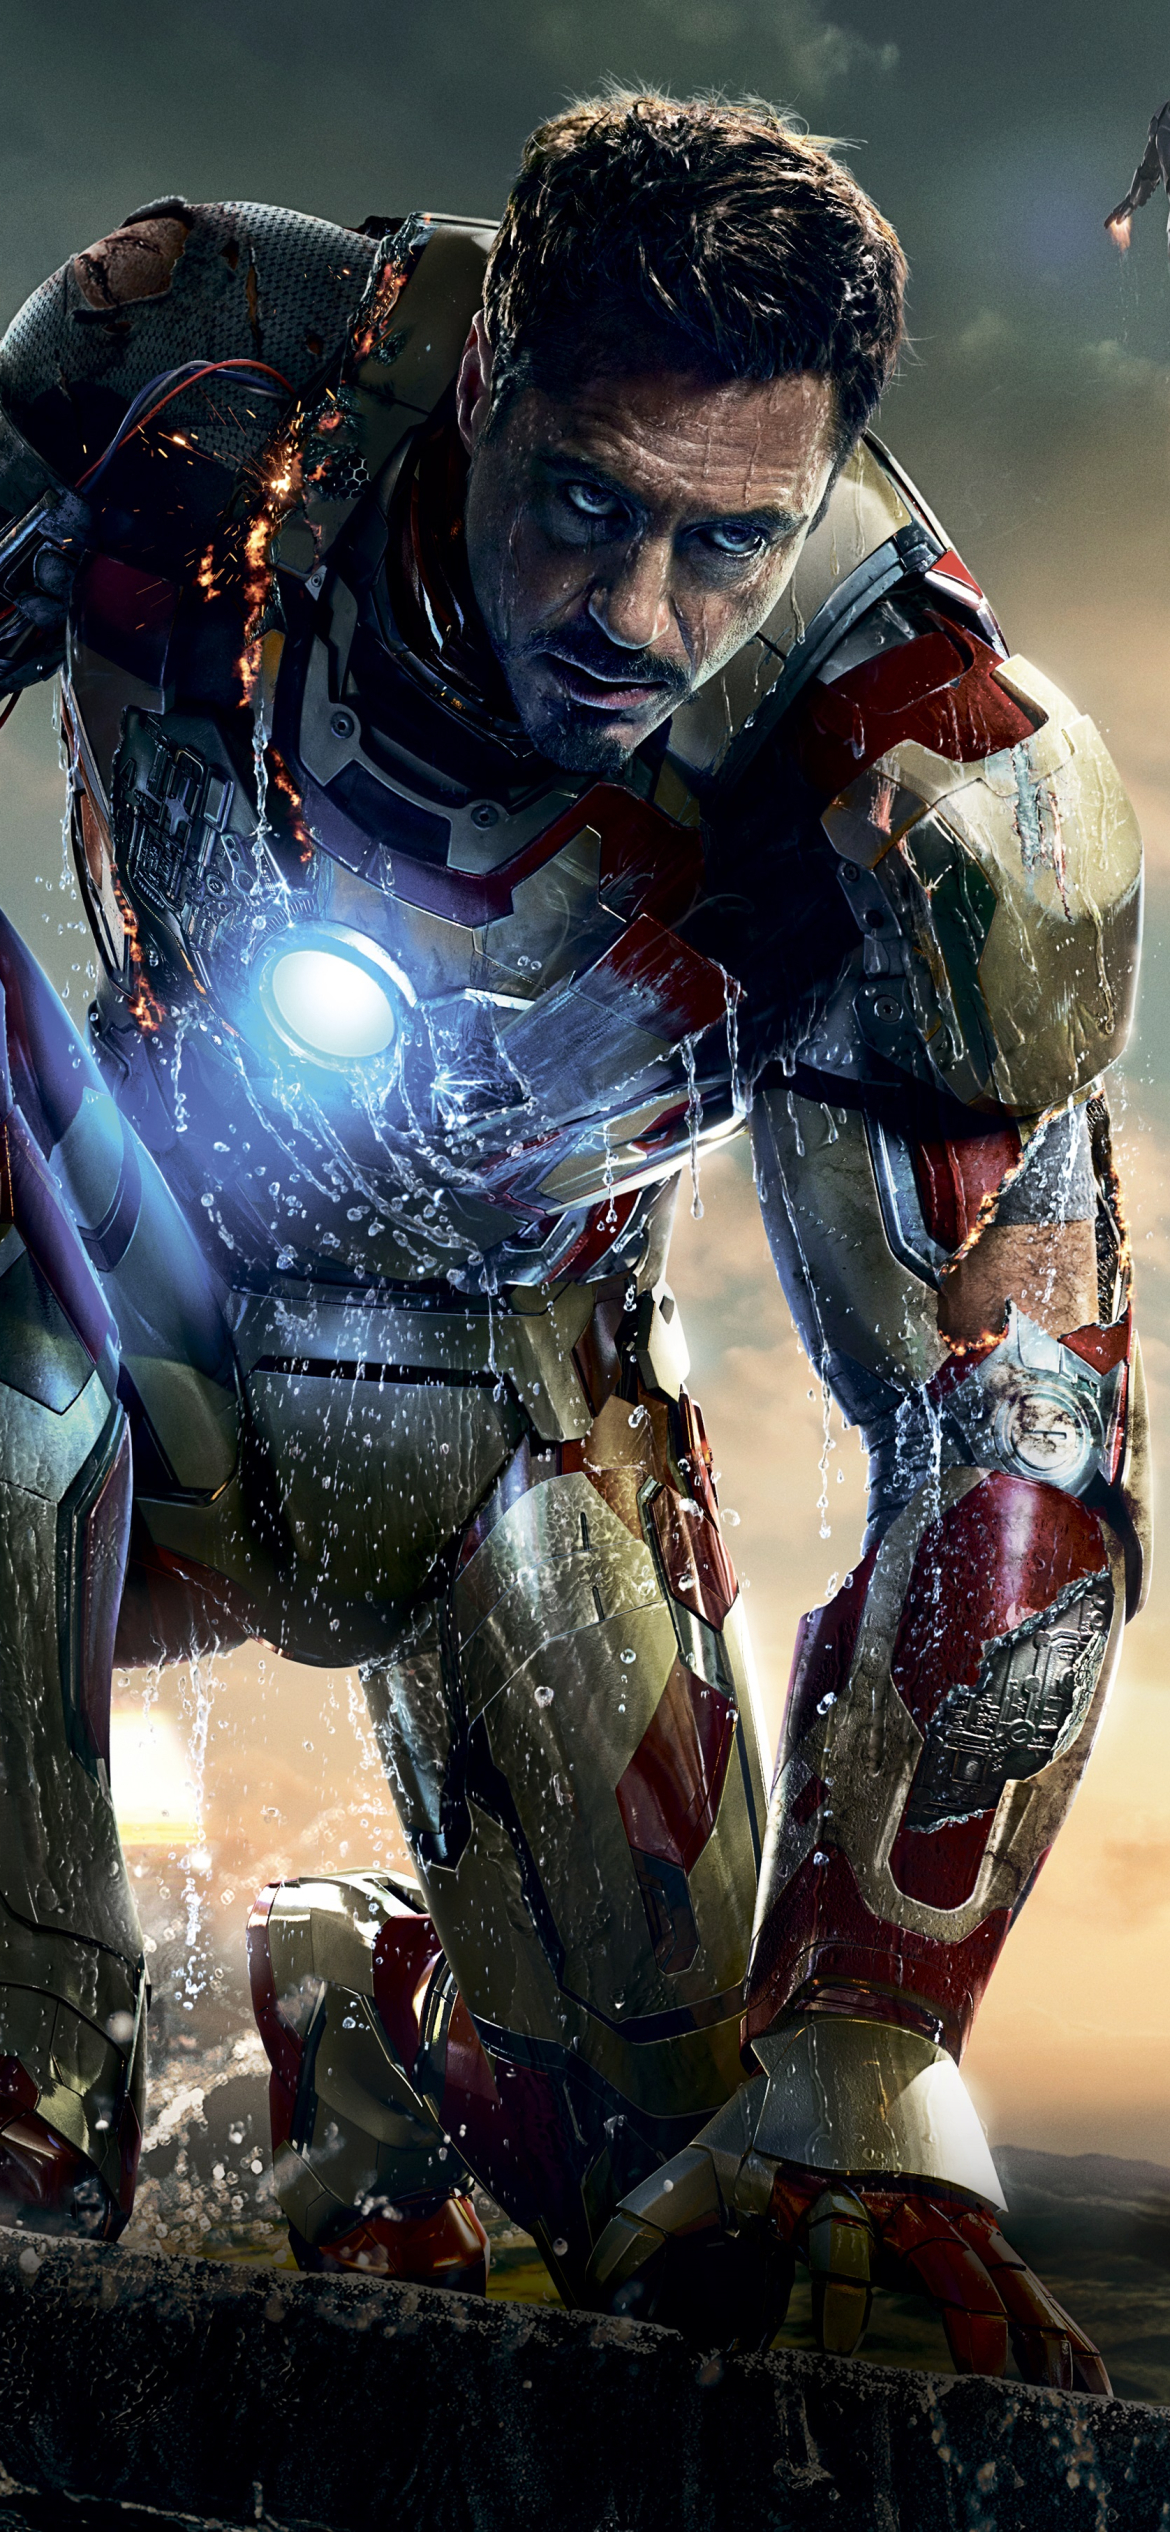 Descarga gratuita de fondo de pantalla para móvil de Iron Man, Películas, Hombre De Acero, Superhéroe, Iron Man 3.